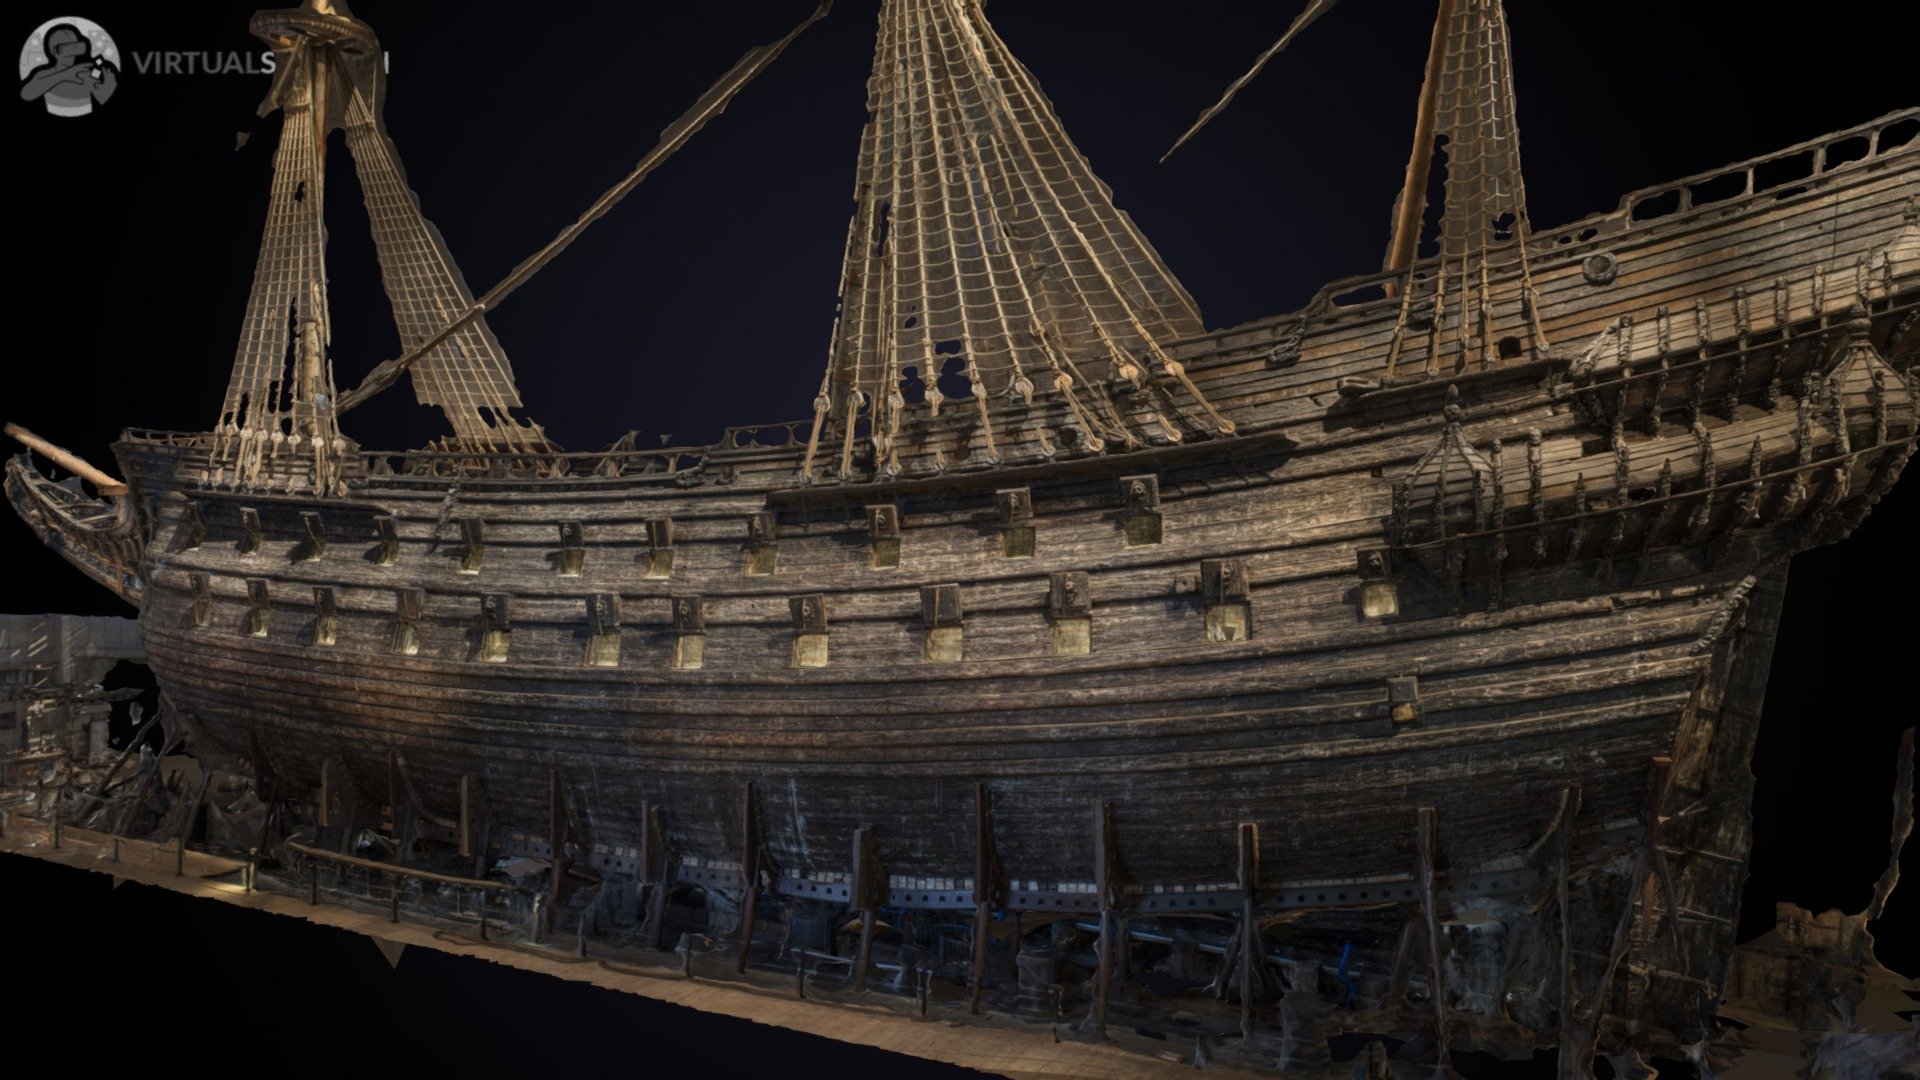 Vasa Ship - 3D model by virtualsweden (@virtualsweden) [137c0e1